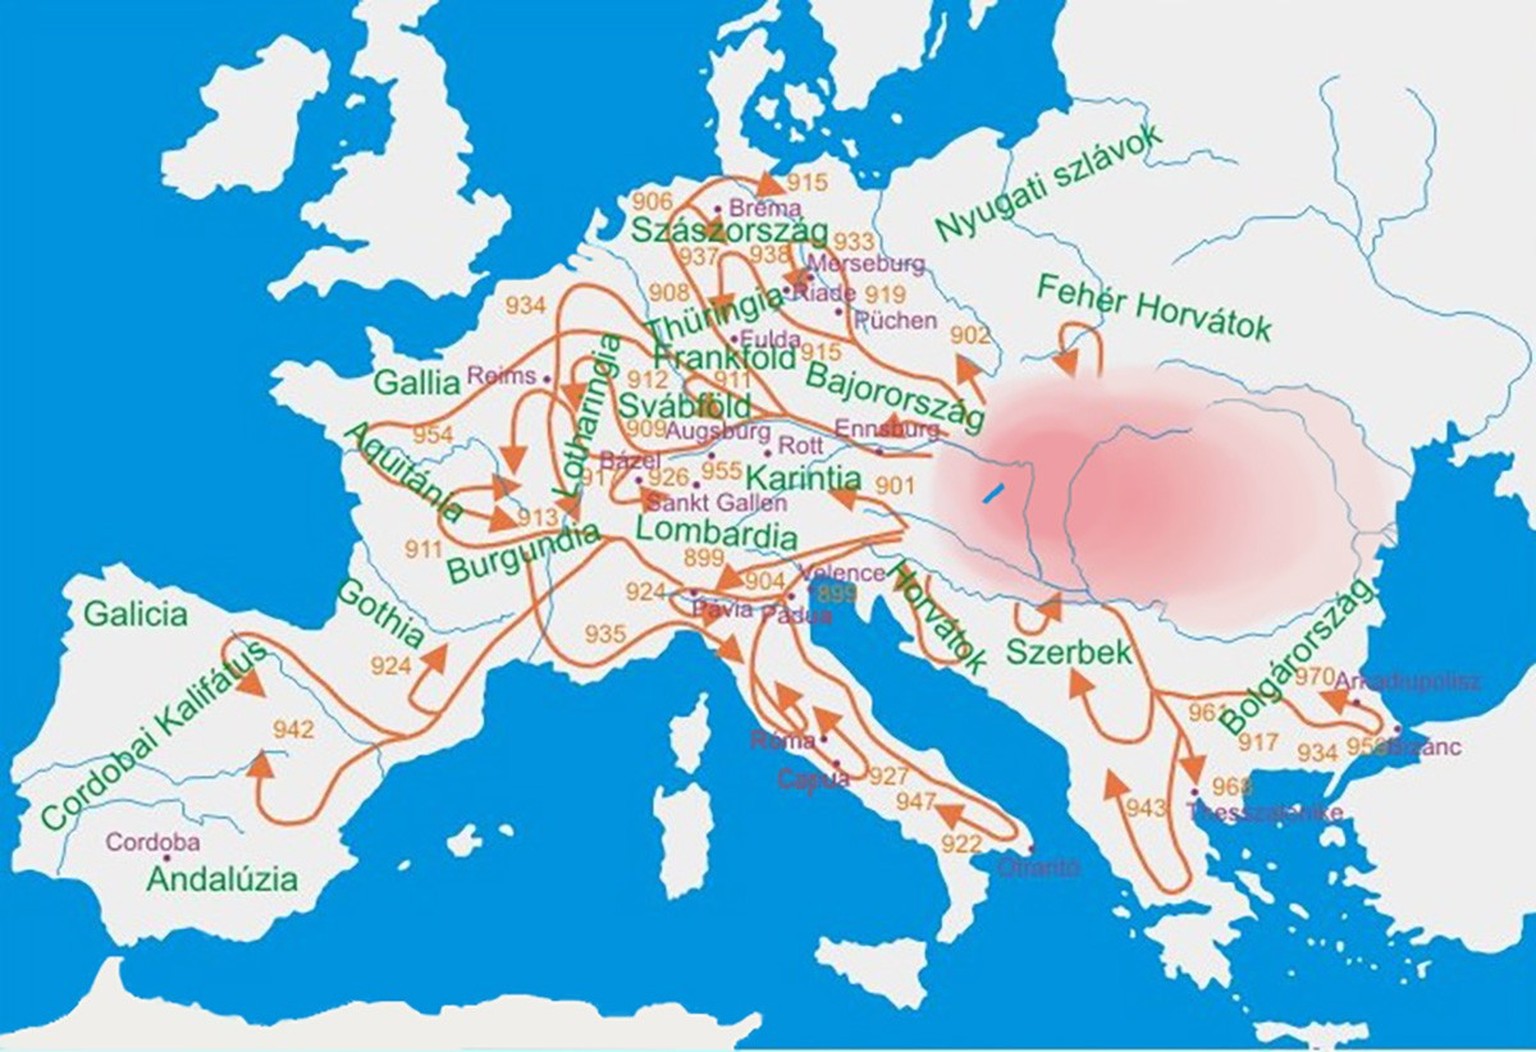 Déplacements des Magyars dans les années 900.
https://commons.wikimedia.org/wiki/File:Kalandozasok.jpg